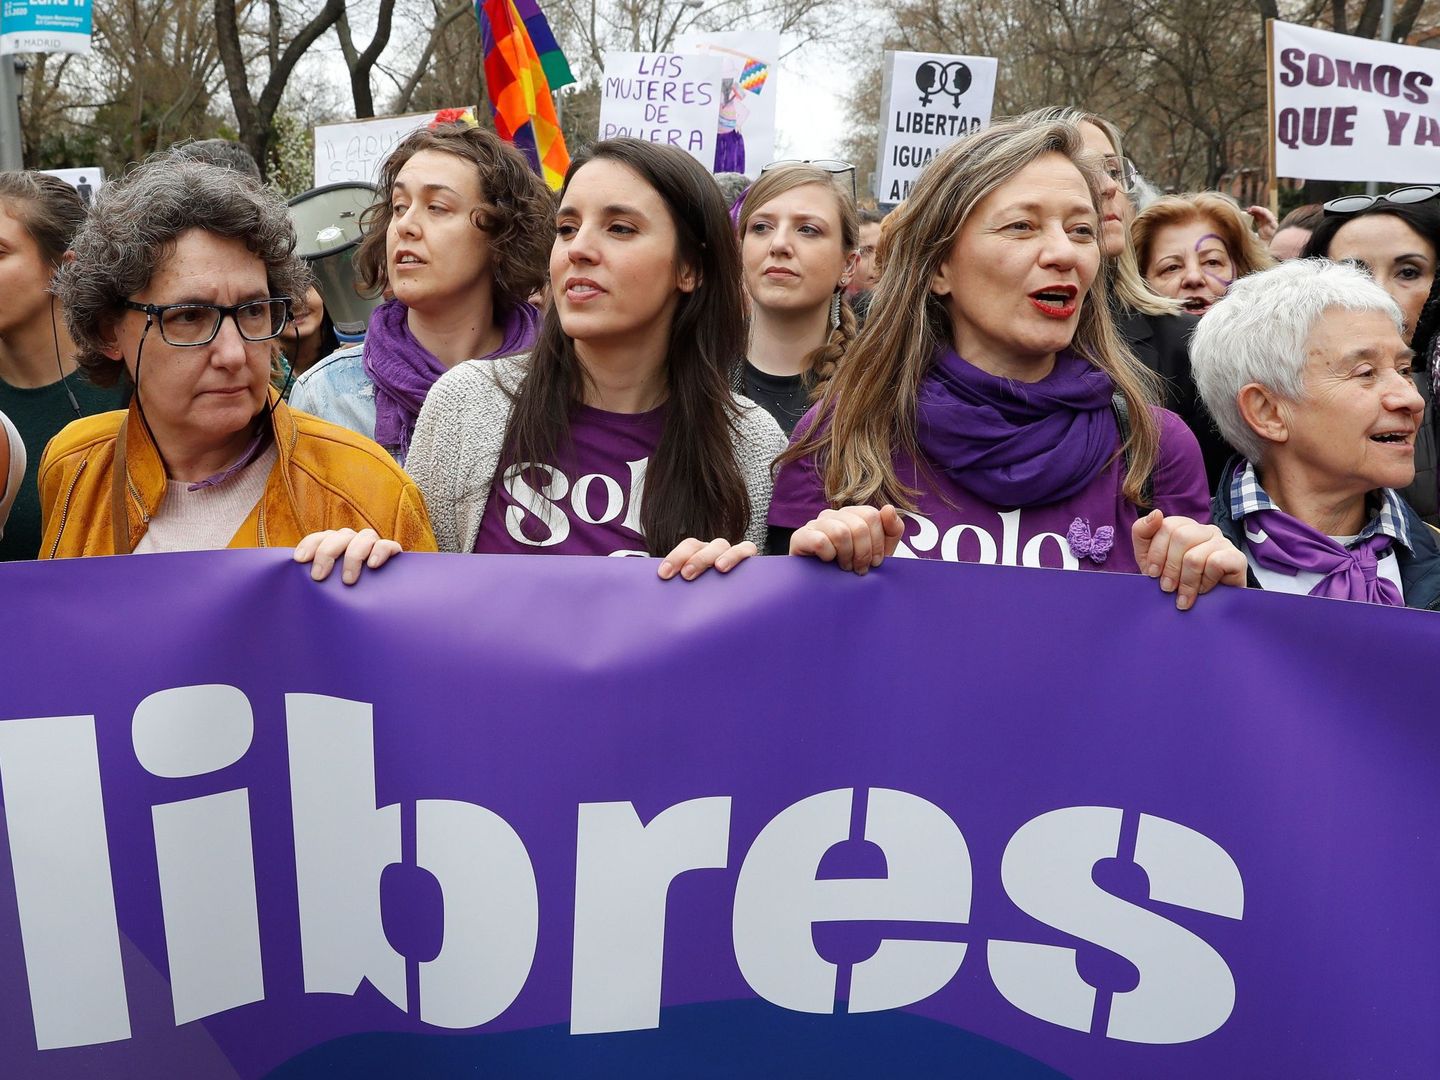 GRAF3688. MADRID, 08 03 2020.- La ministra de Igualdad, Irene Montero (2i), y la delegada del Gobierno contra la Violencia de Género, Victoria Rosell (2d), en la manifestación por el Día de la Mujer, este domingo en Madrid. EFE  Ballesteros